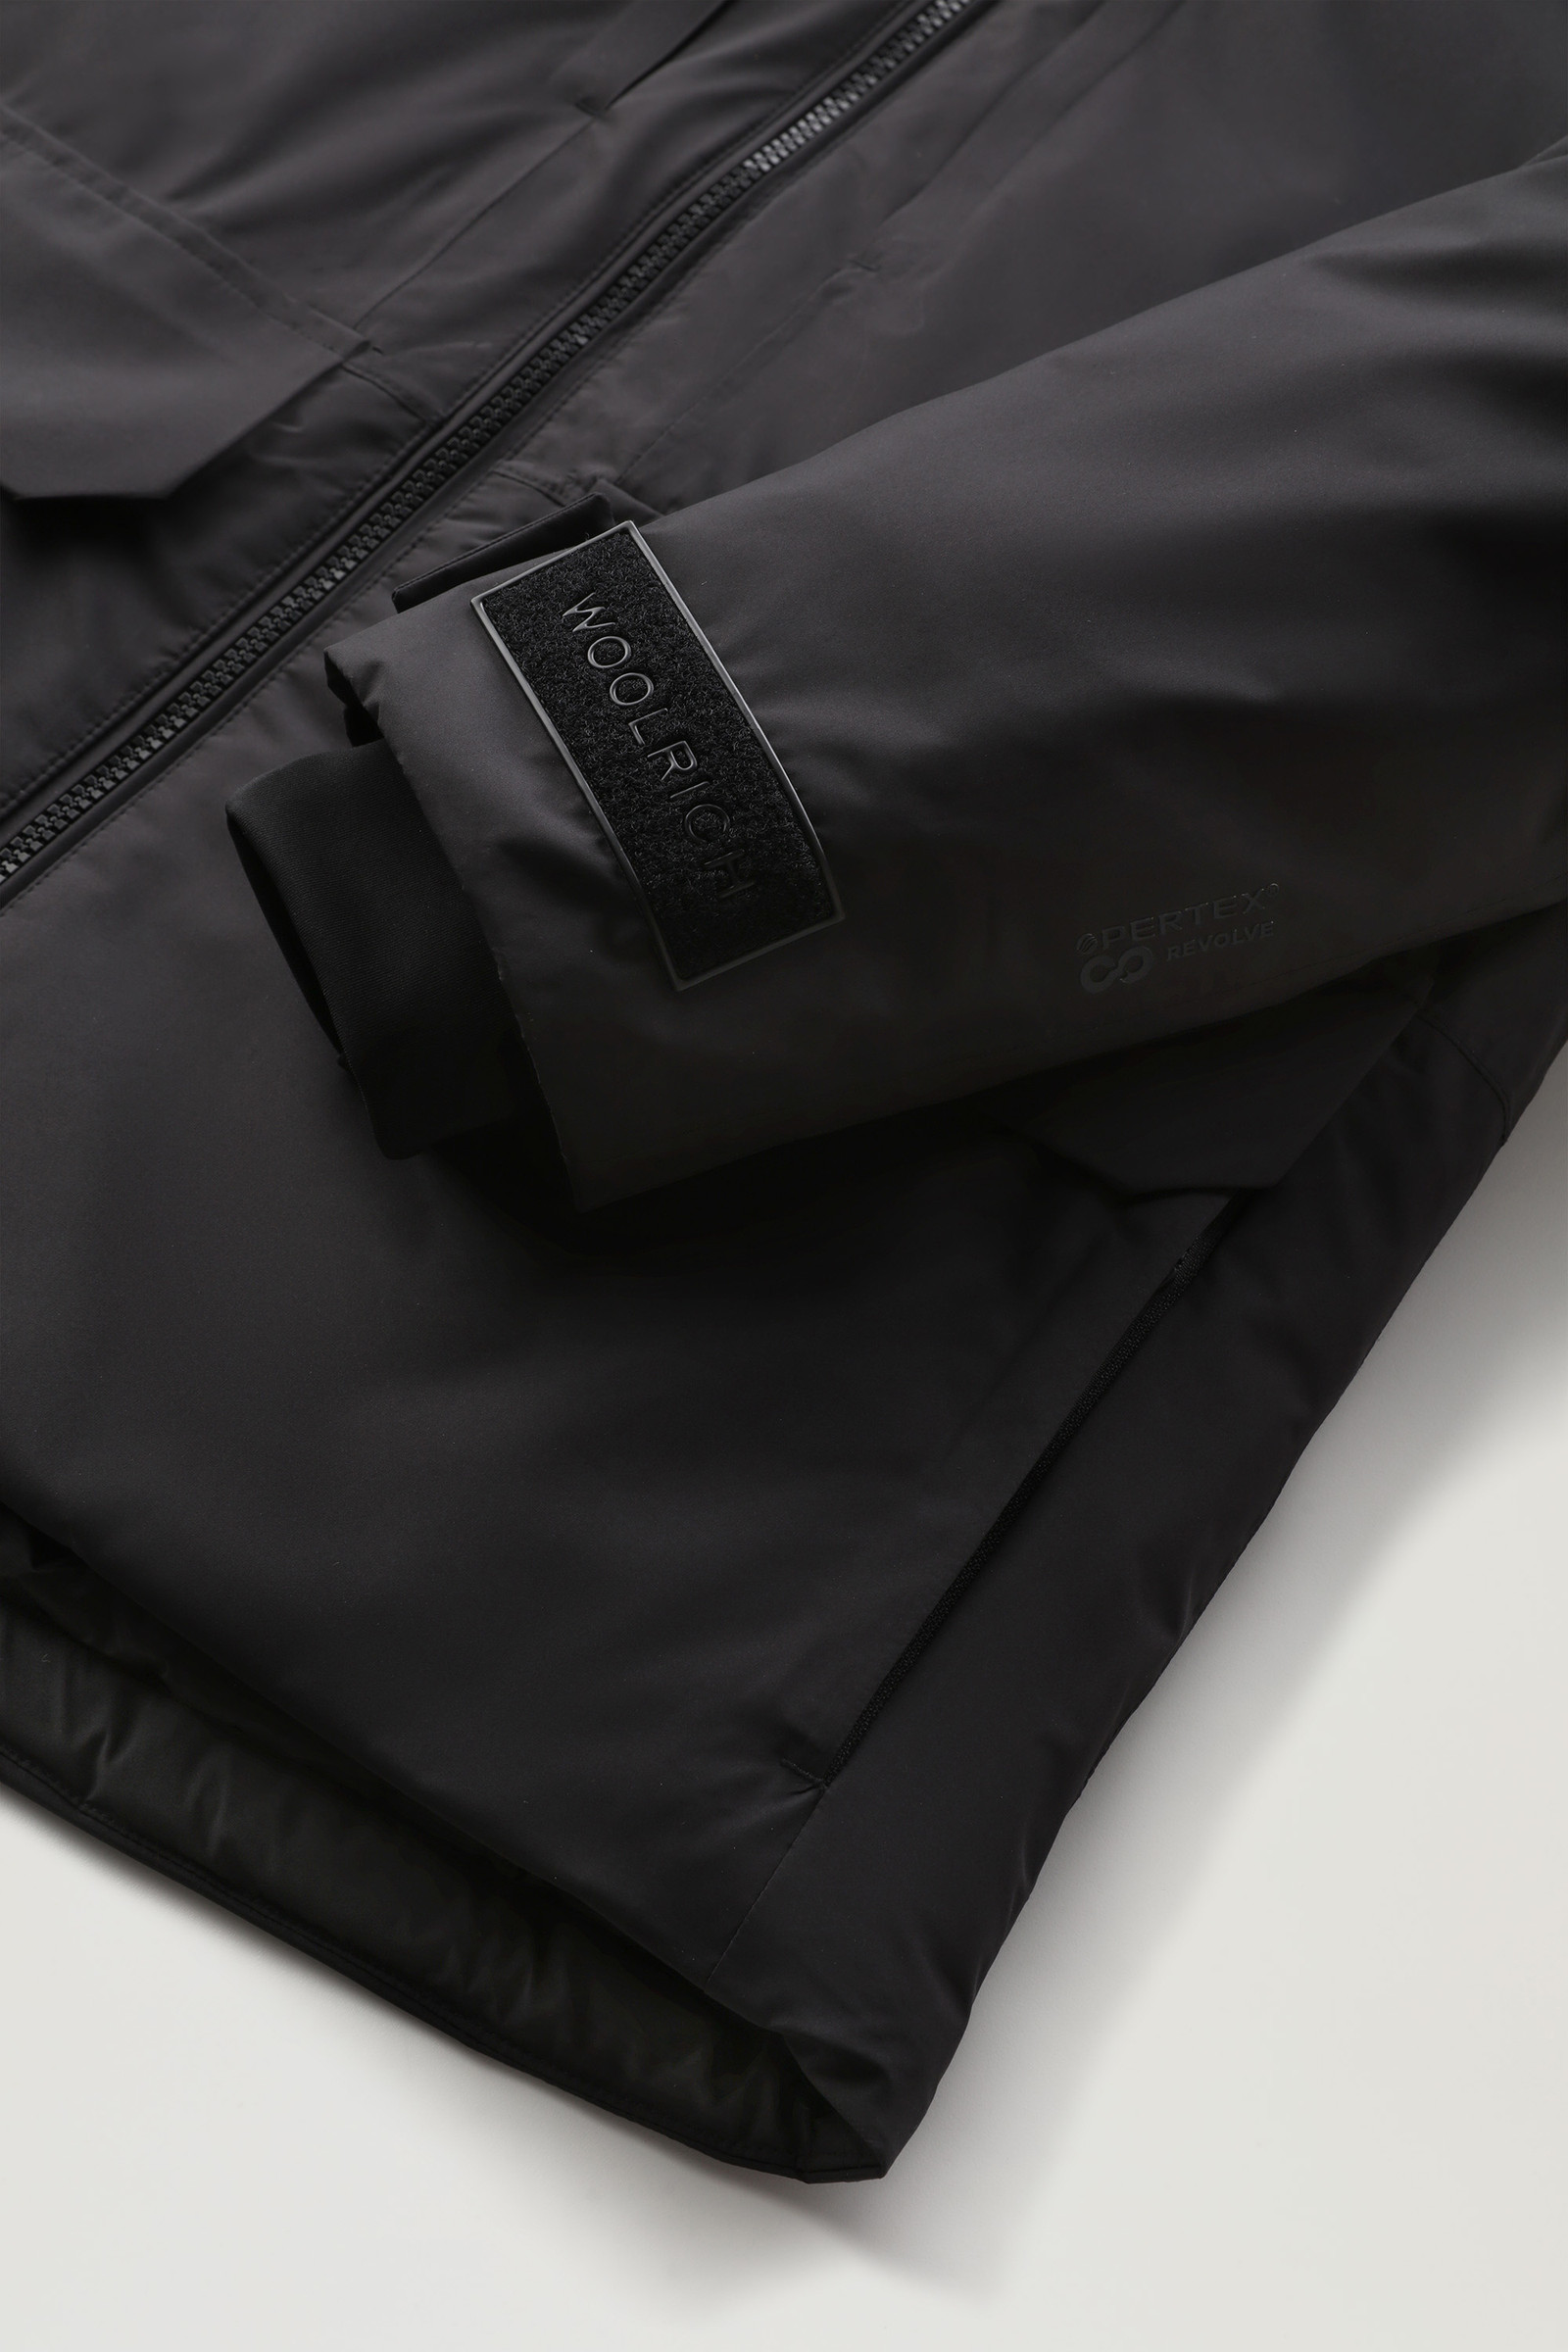 Women's Harveys Waterproof Jacket in Pertex Revolve Black | Woolrich USA